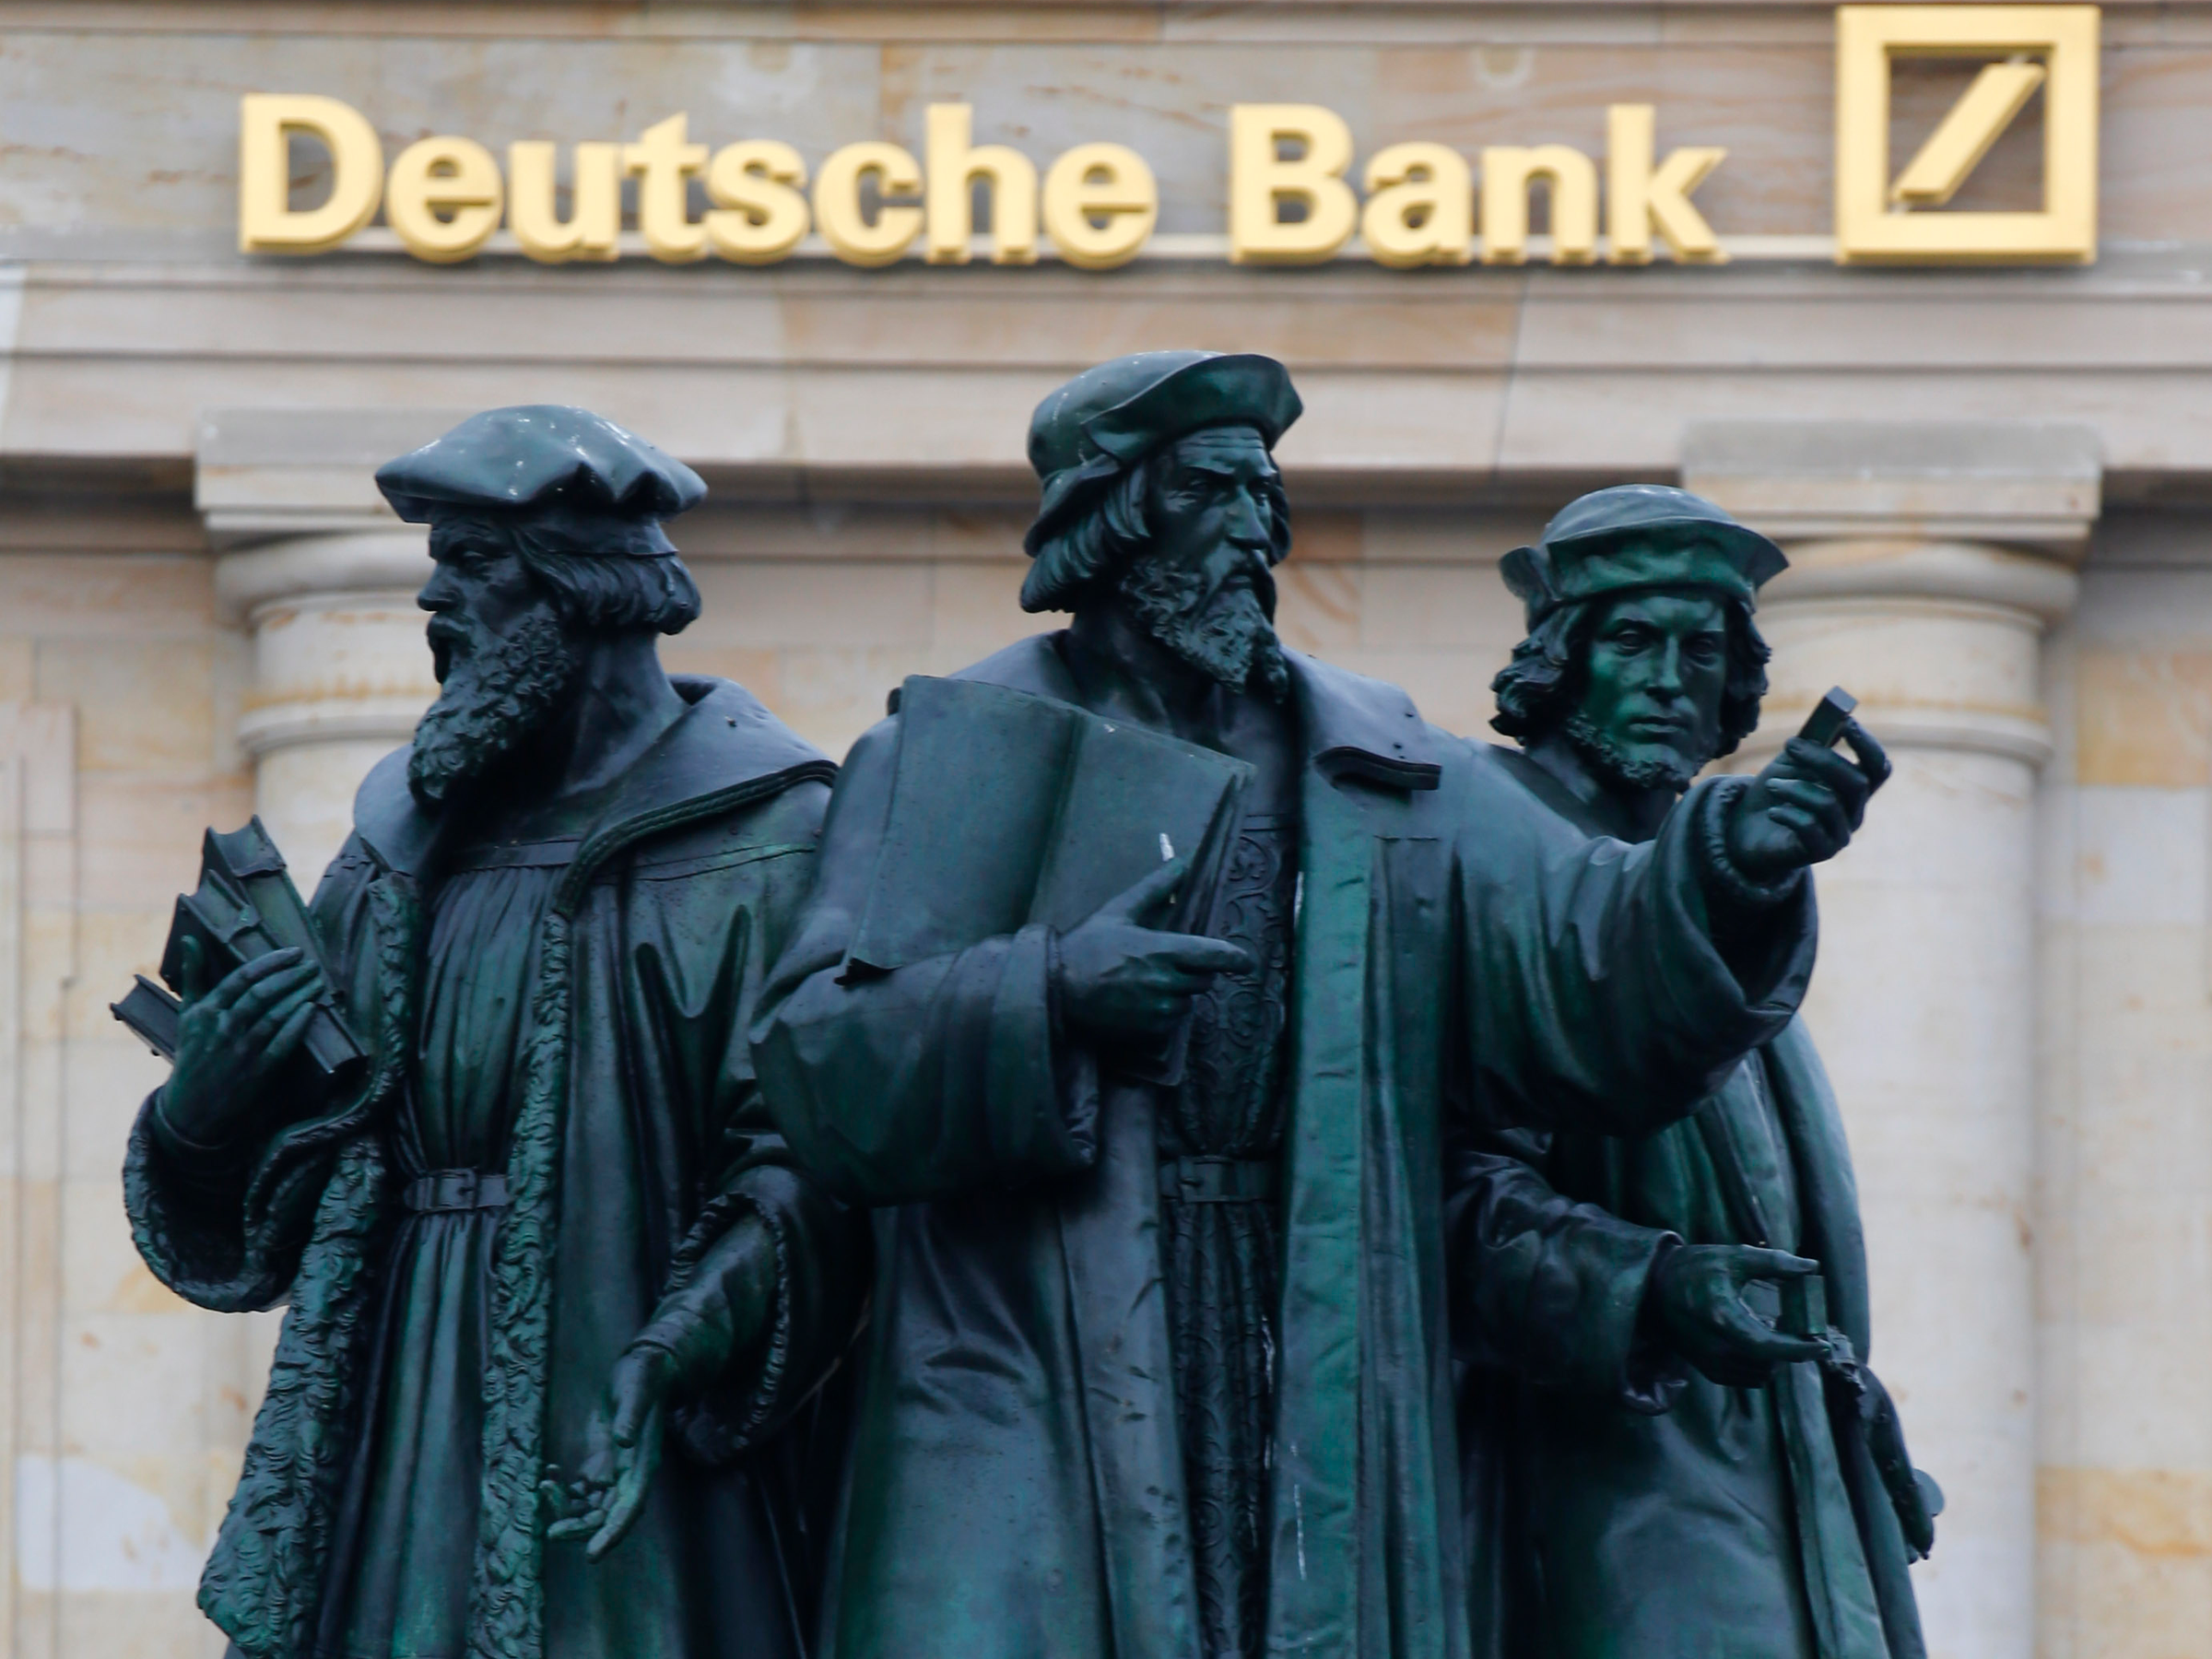 Neiman Lender Deutsche Bank Says Retailer Breached Loan Terms - WSJ